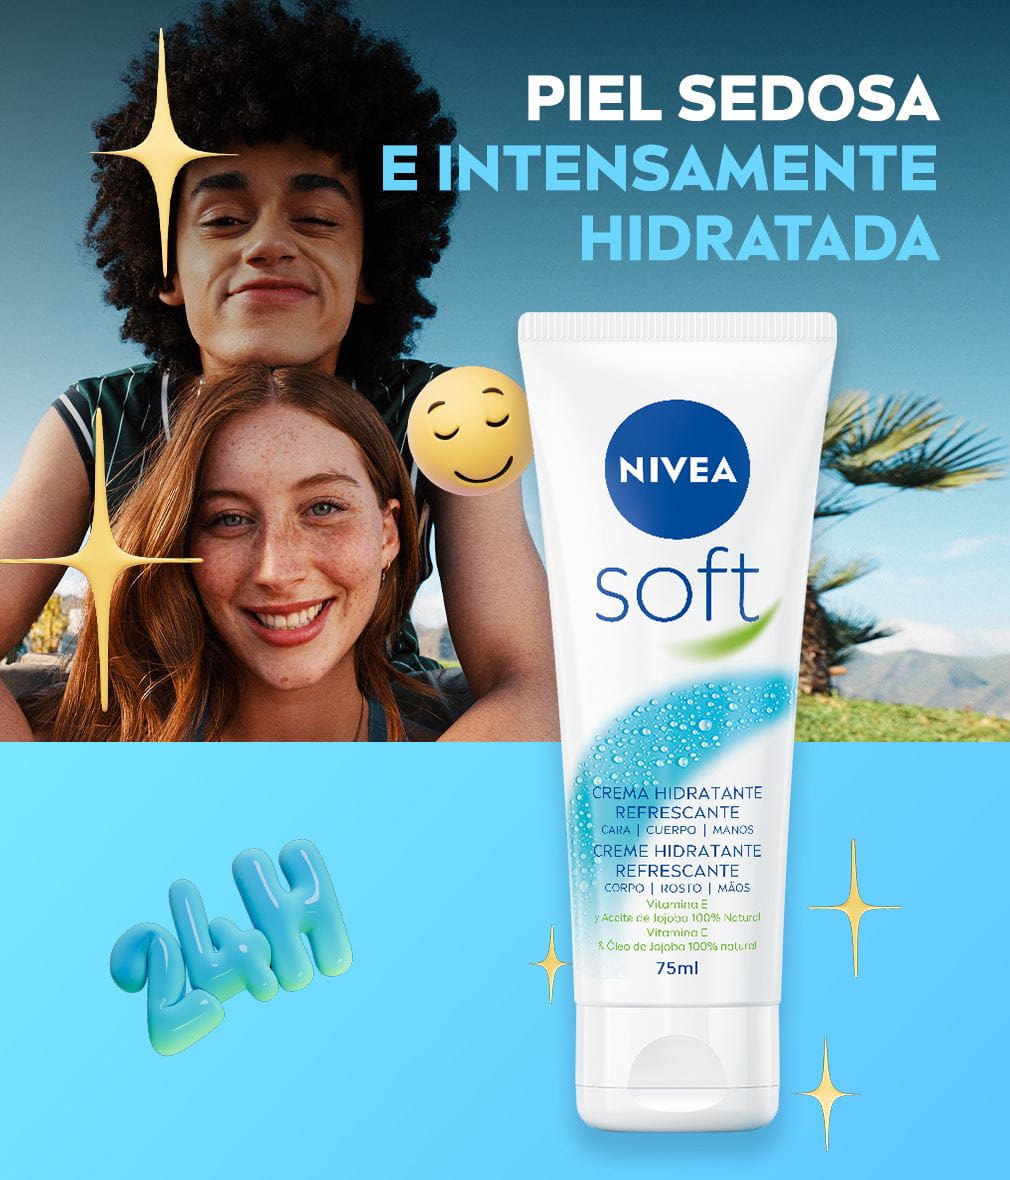 NIVEA Soft web